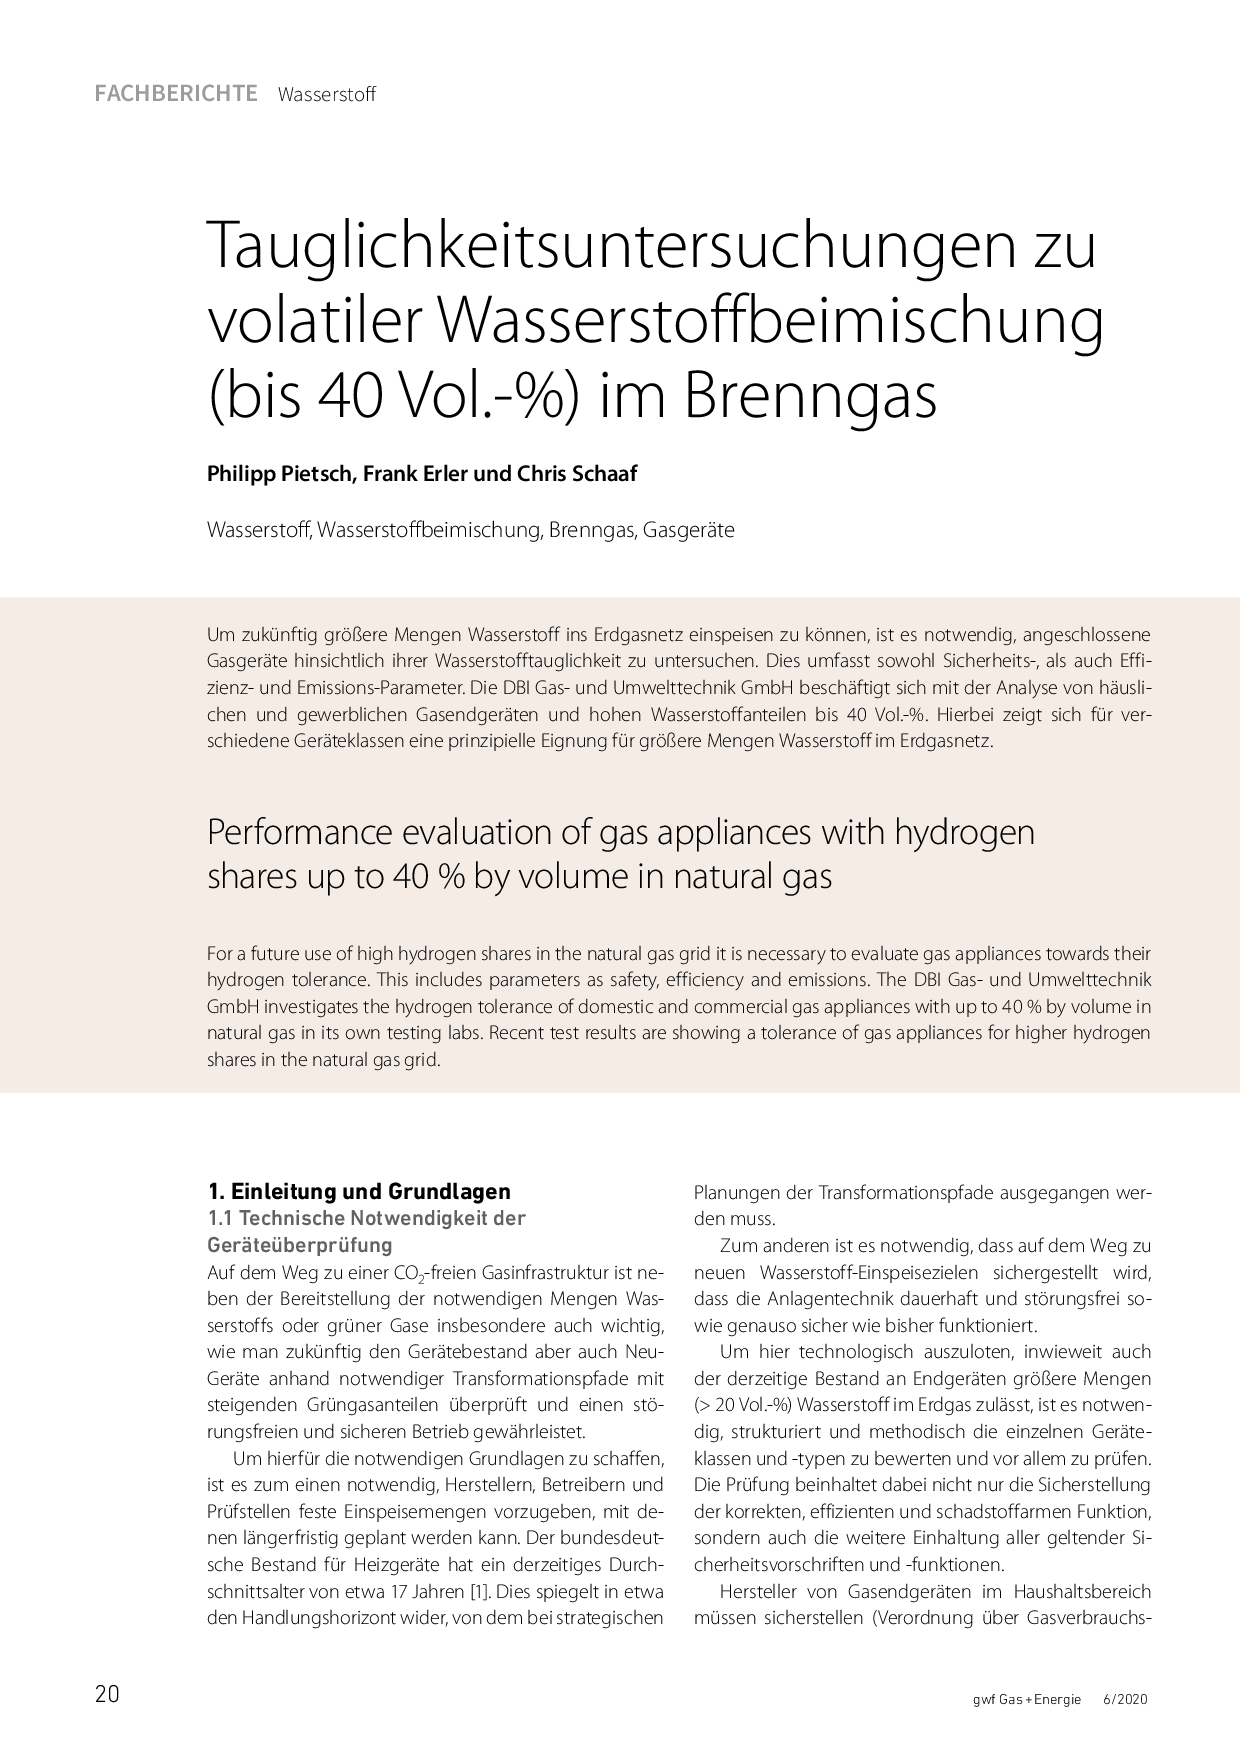 Tauglichkeitsuntersuchungen zu volatiler Wasserstoffbeimischung (bis 40 Vol.-%) im Brenngas